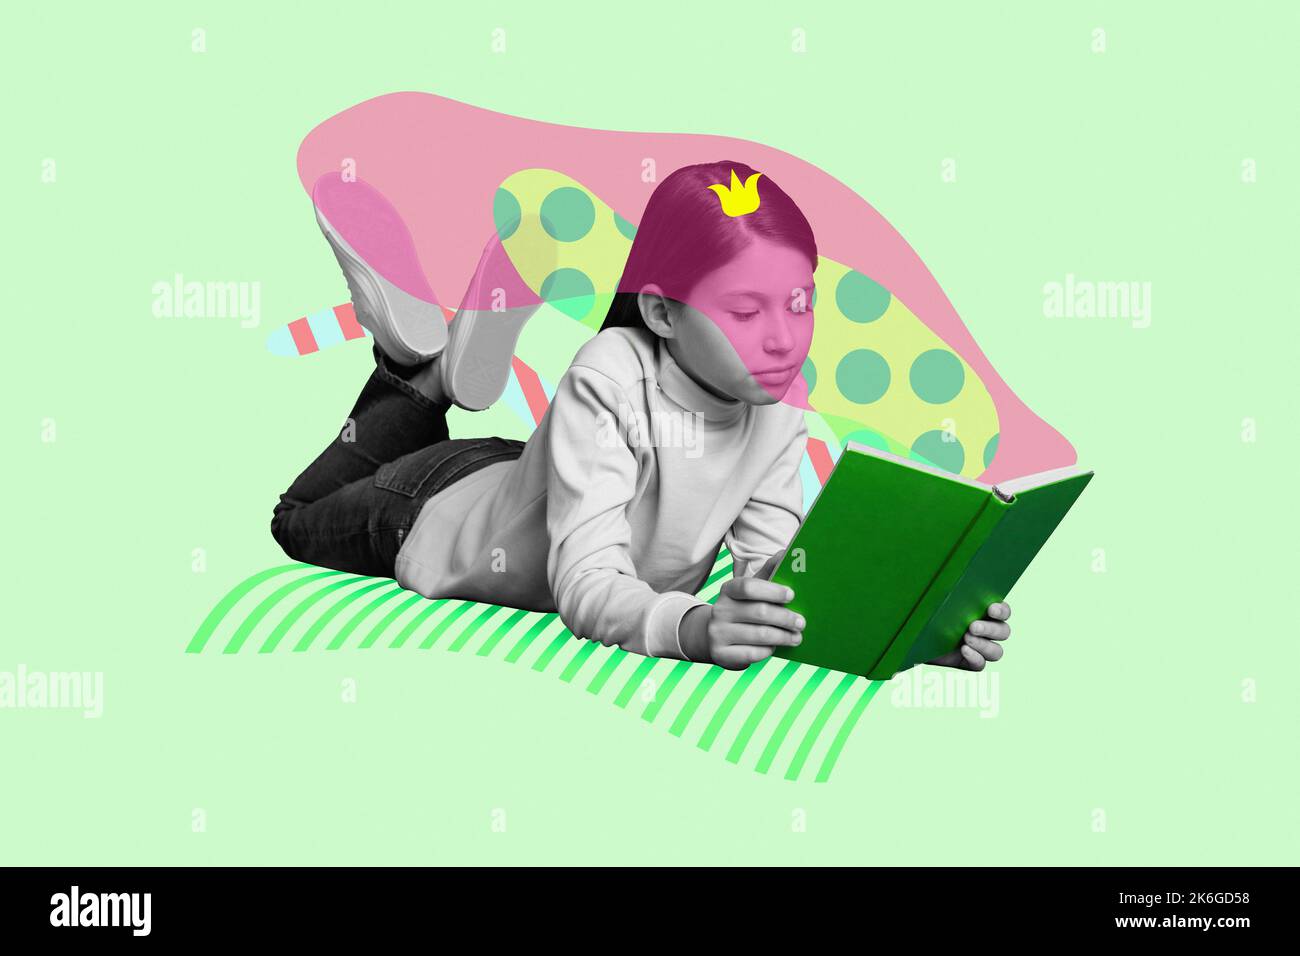 Poster créatif collage de rêve mignon petite fille lecture livre couronne princesse queen conte de fées éducation imagination Wonderland Banque D'Images